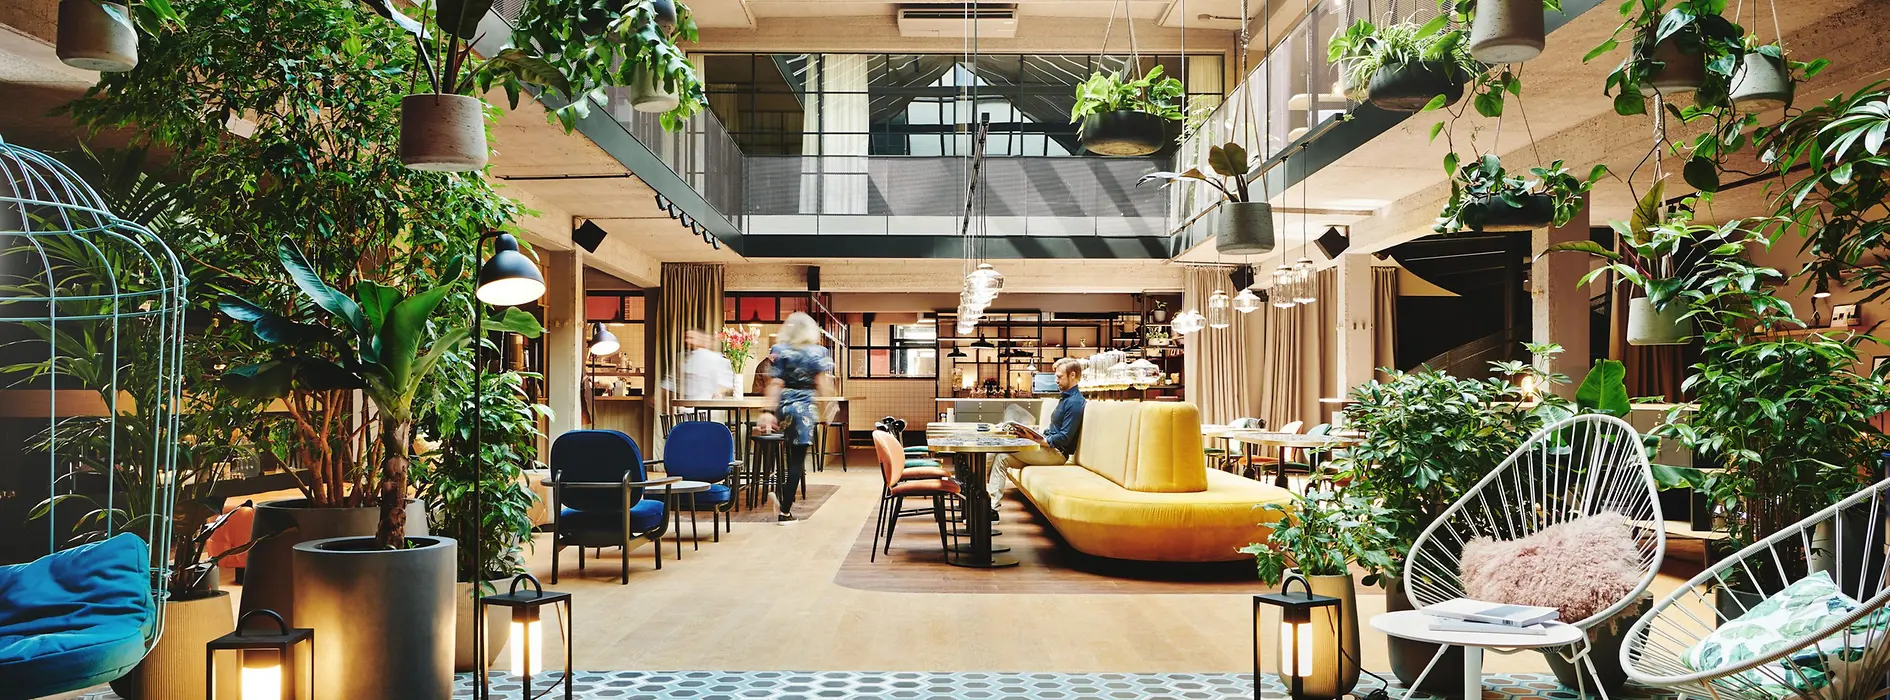 Hotel Gilbert, Lobby / Restaurant